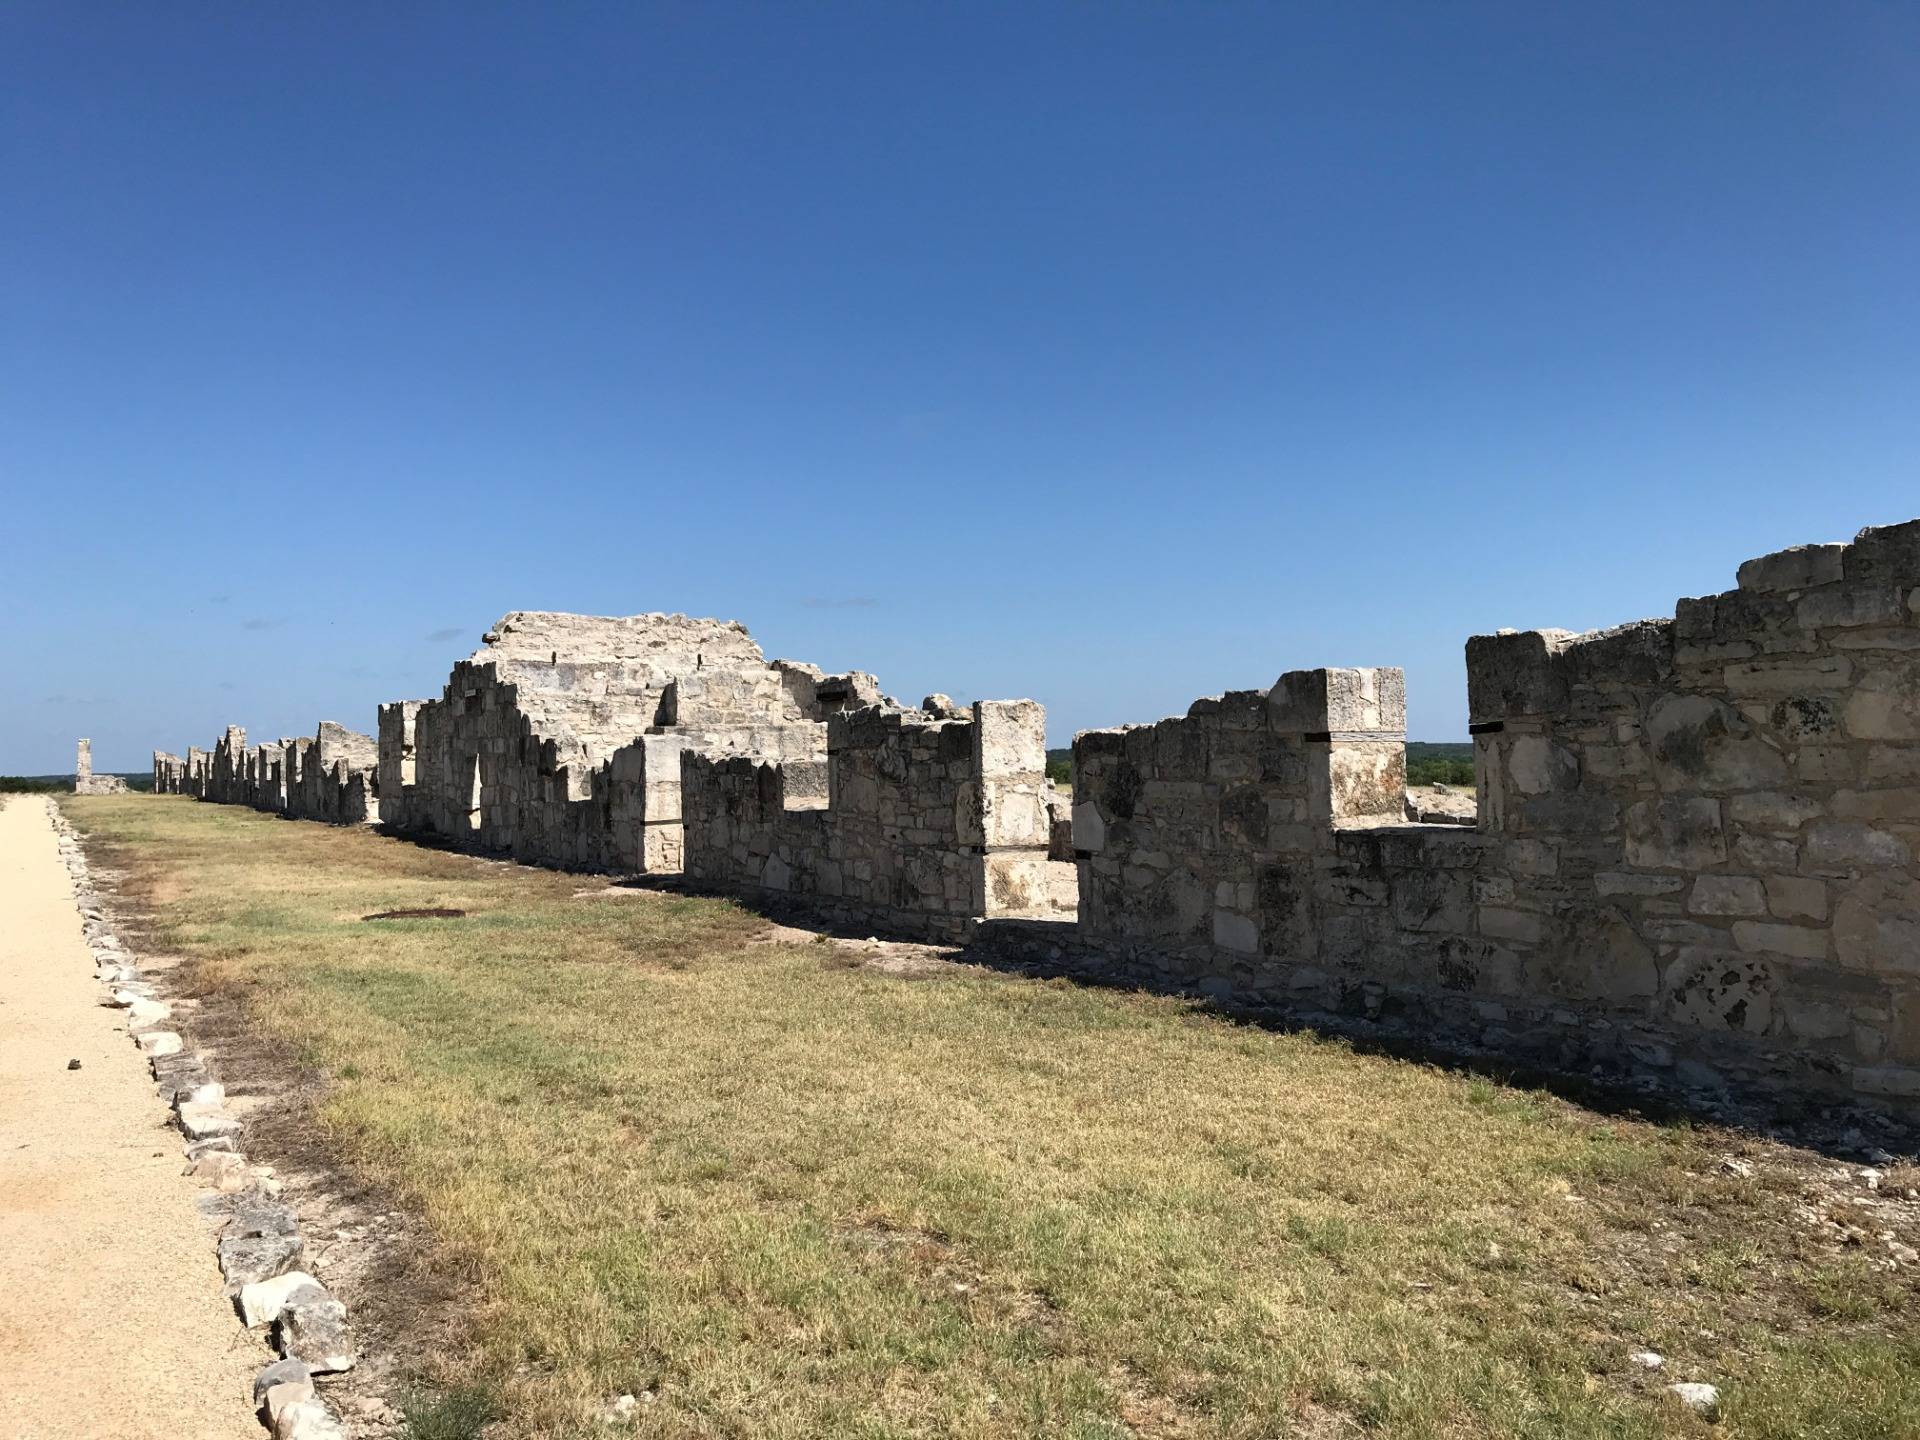 Ruins of more barracks at Fort McKavett